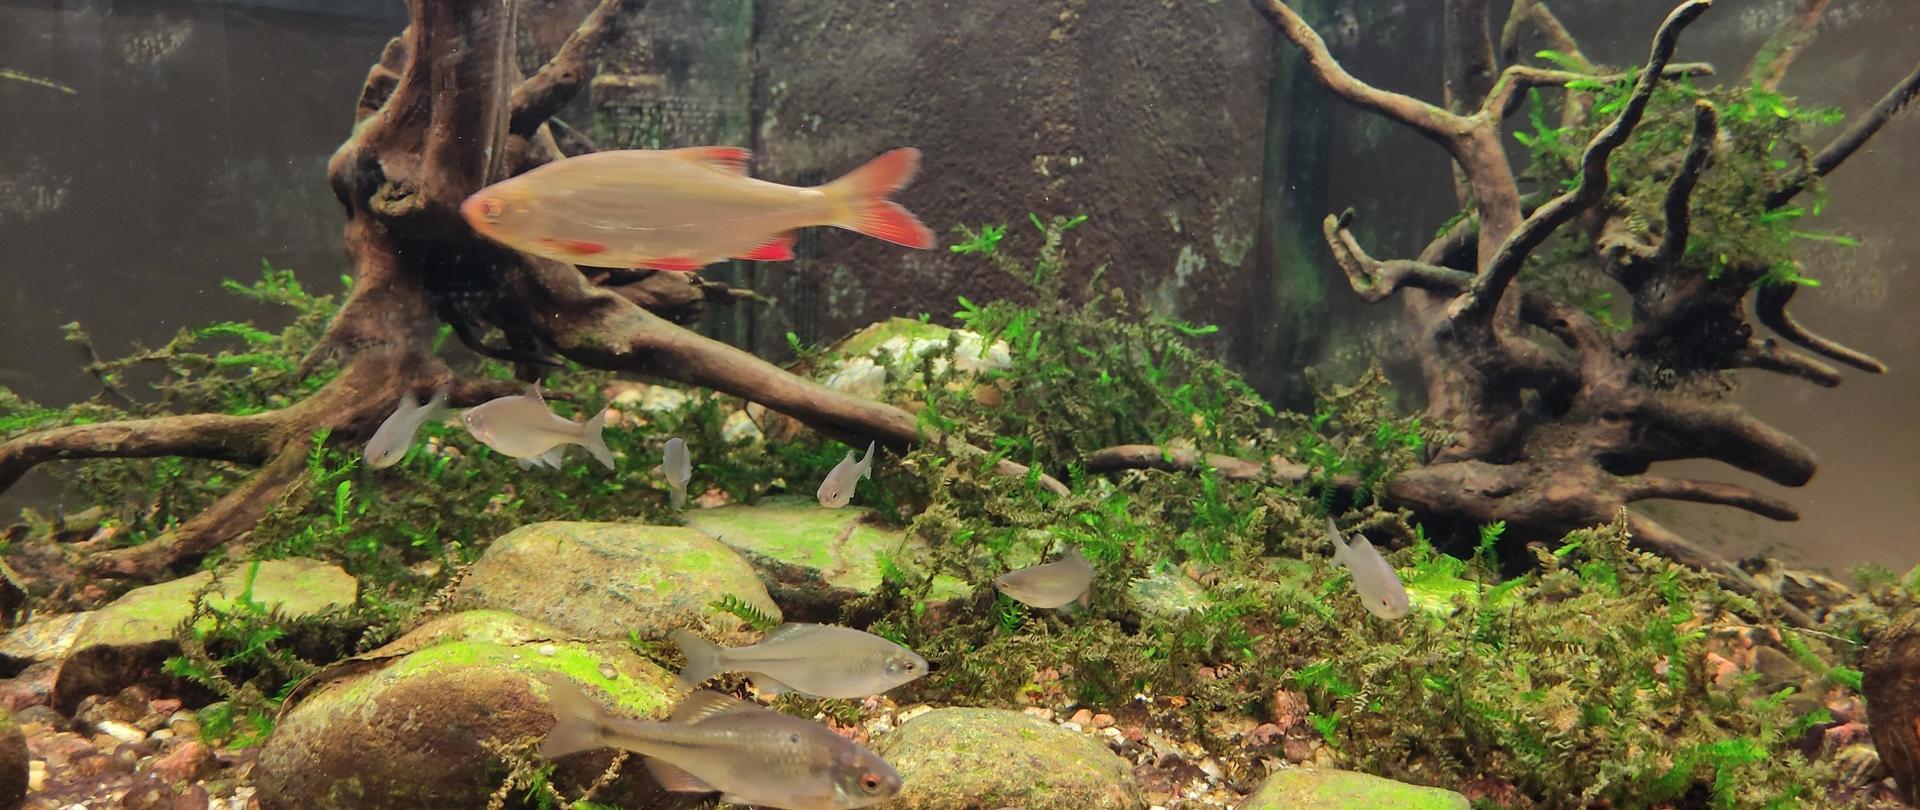 Nowe gatunki ryb w akwarium Regionalnej Dyrekcji Ochrony Środowiska w Warszawie